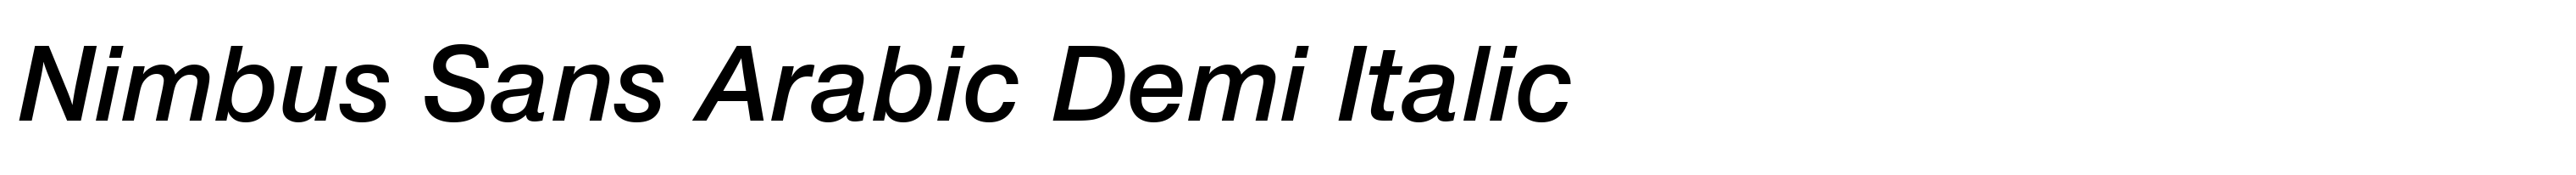 Nimbus Sans Arabic Demi Italic